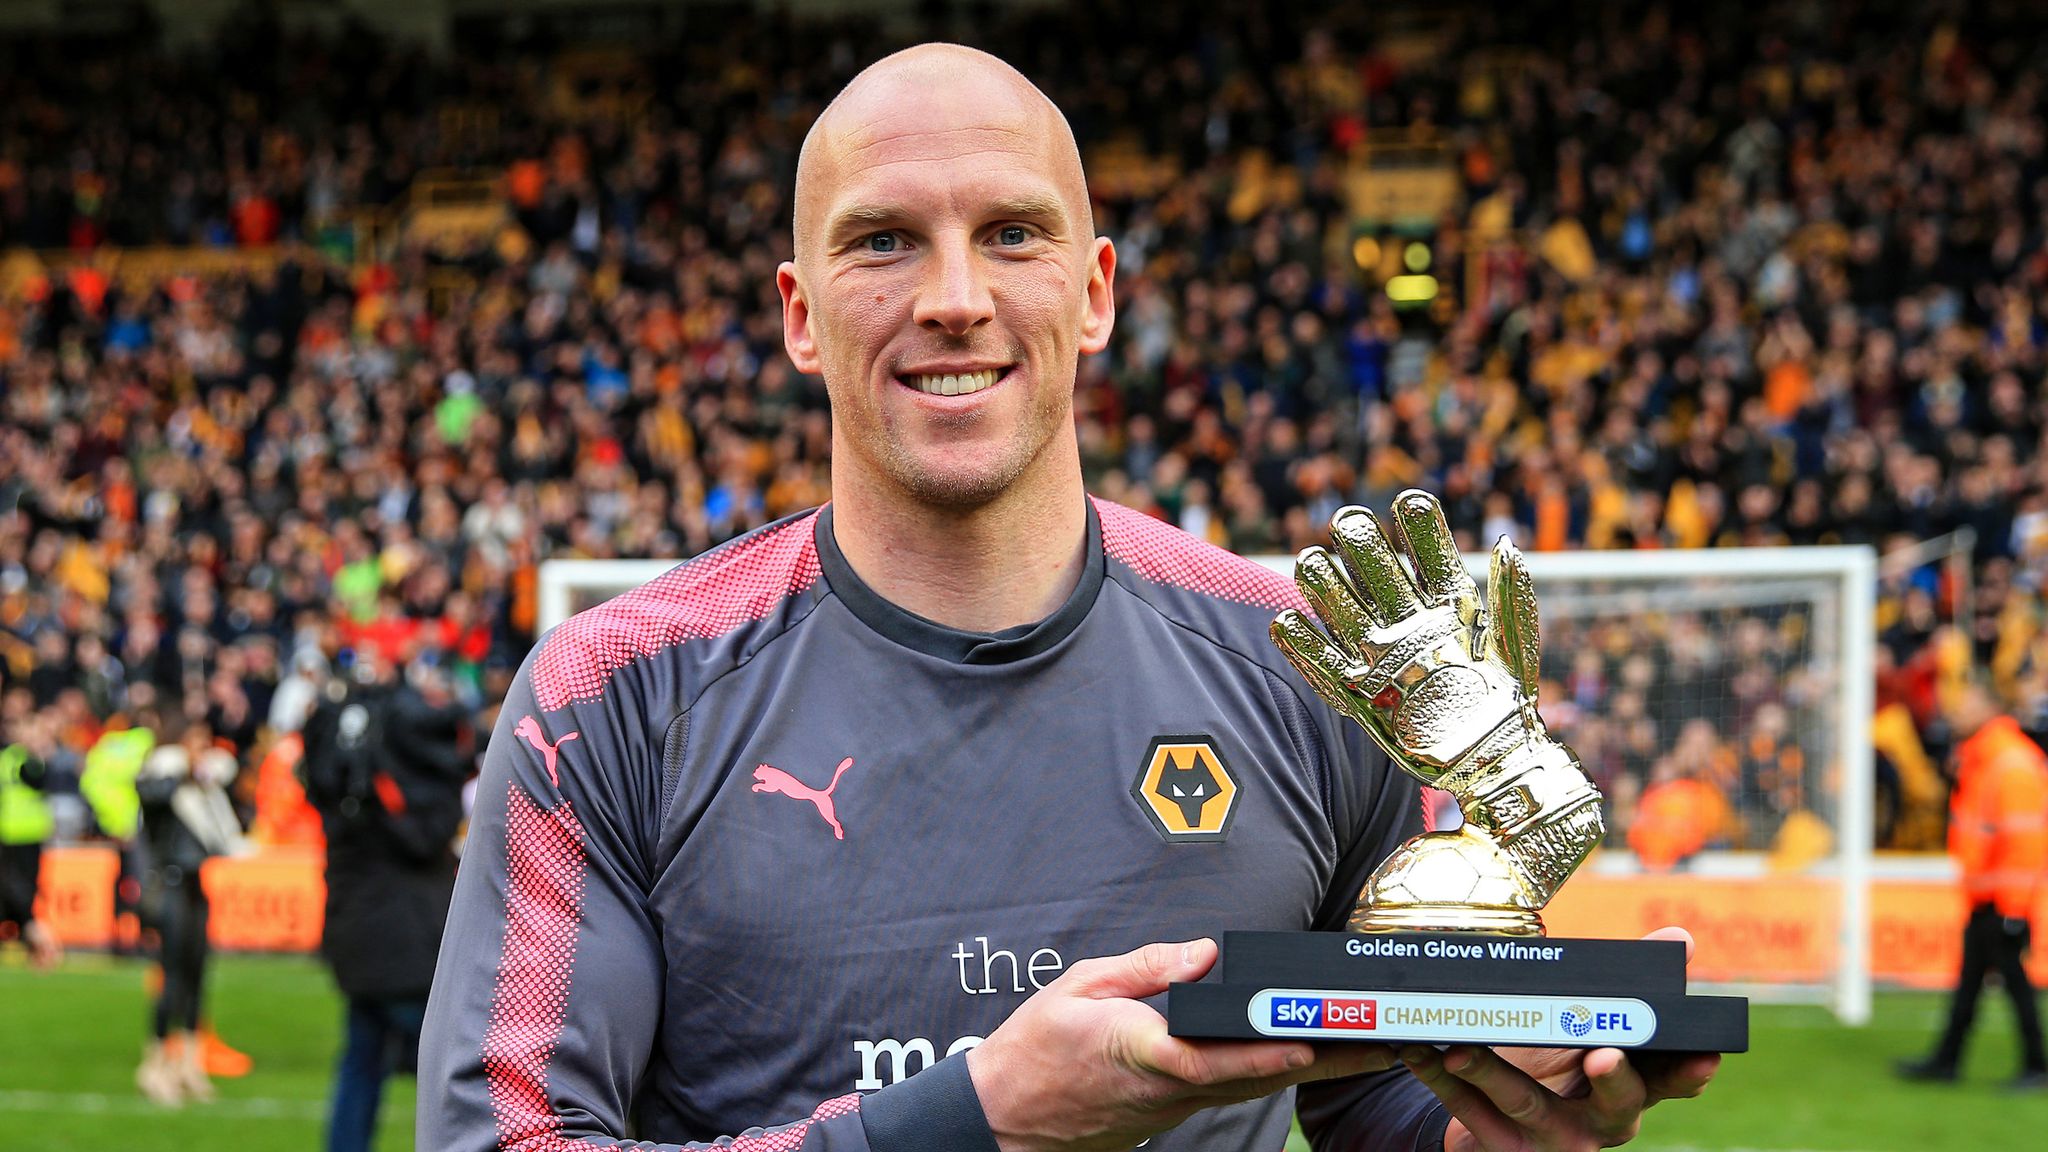 Wolves' John Ruddy wins Championship Golden Glove award, Football News